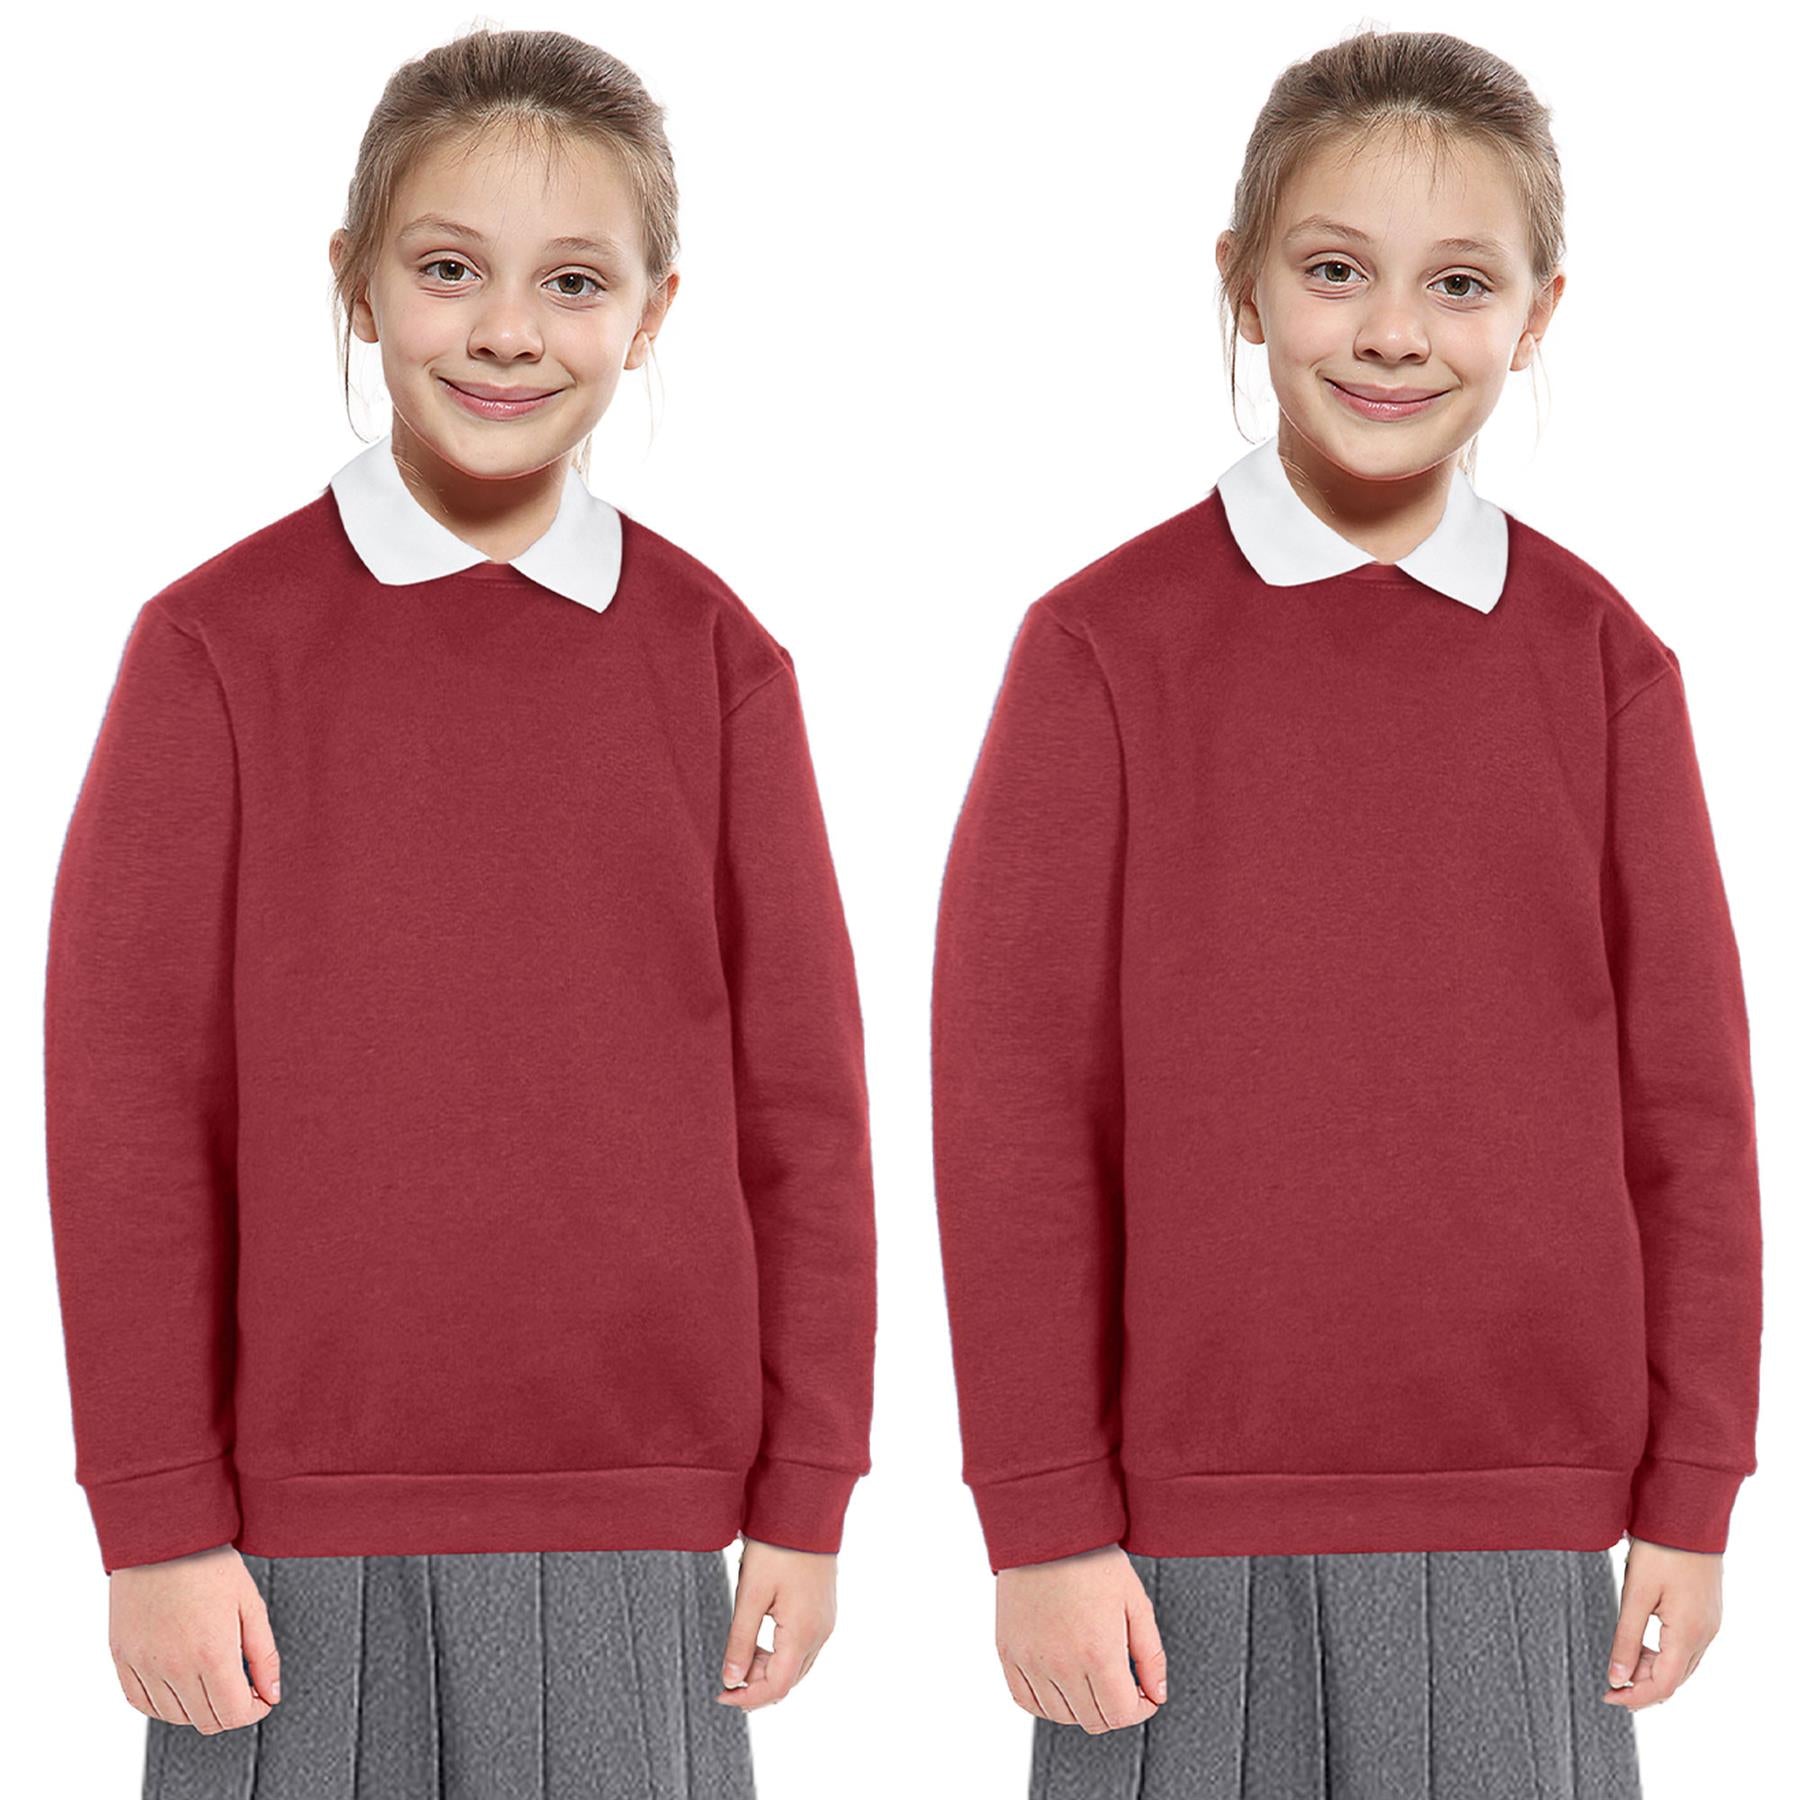 Kids Girls Boys Unisex Scouts School Uniform Jumper Pack Of 2 Cardi Sweatshirt